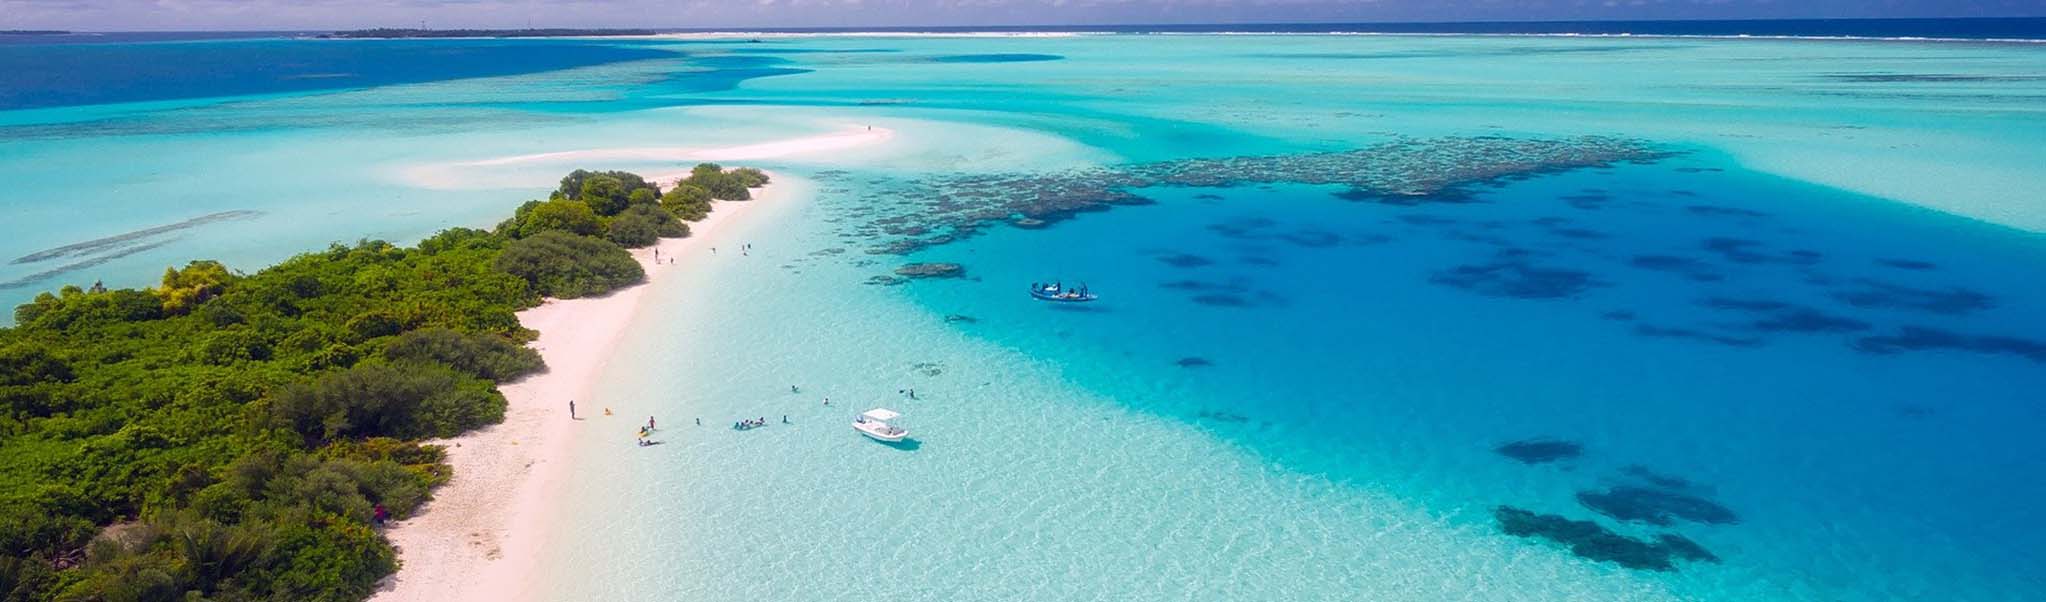 plage spot de plongee maldives vincent thepaut